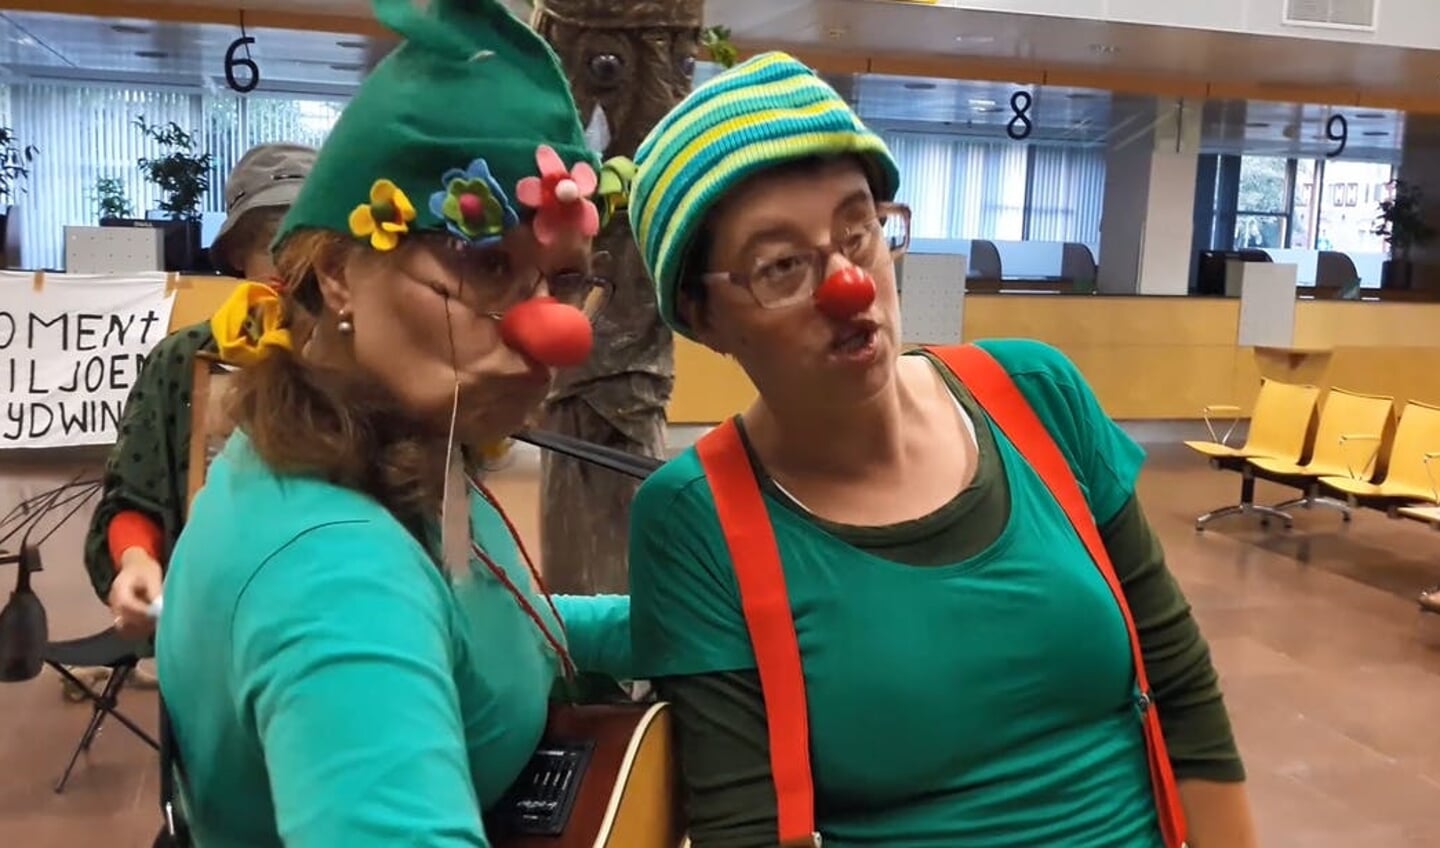 Tegenstanders demonstreerden met 'Greeny Clowns' in het stadhuis. 